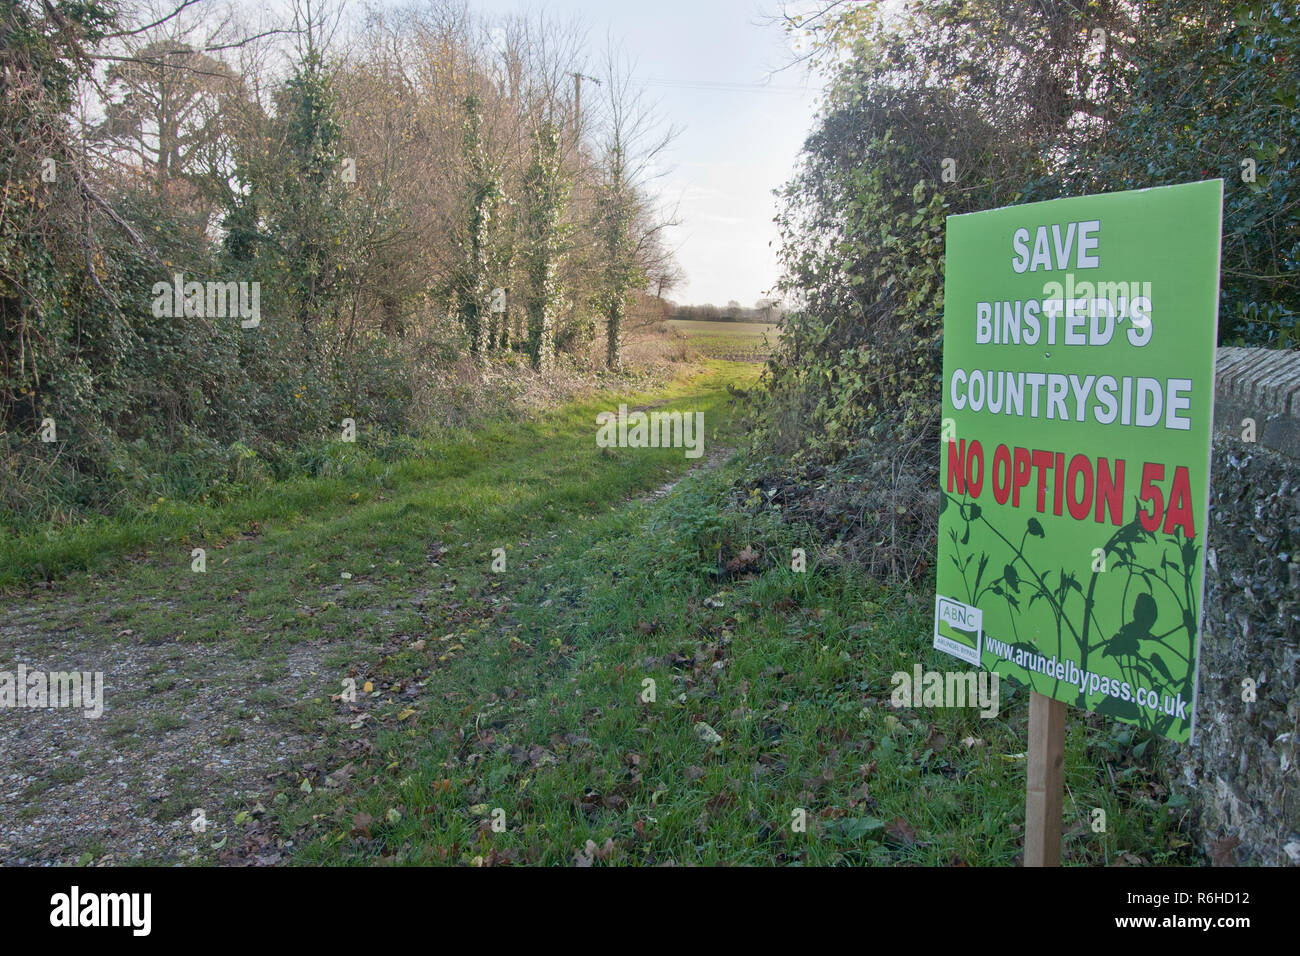 Aucun signe de protestation Option 5A s'opposer à la nouvelle dérivation Binsted, Arundel, Sussex de l'Ouest. Binsted est un village ancré dans le folklore. Banque D'Images